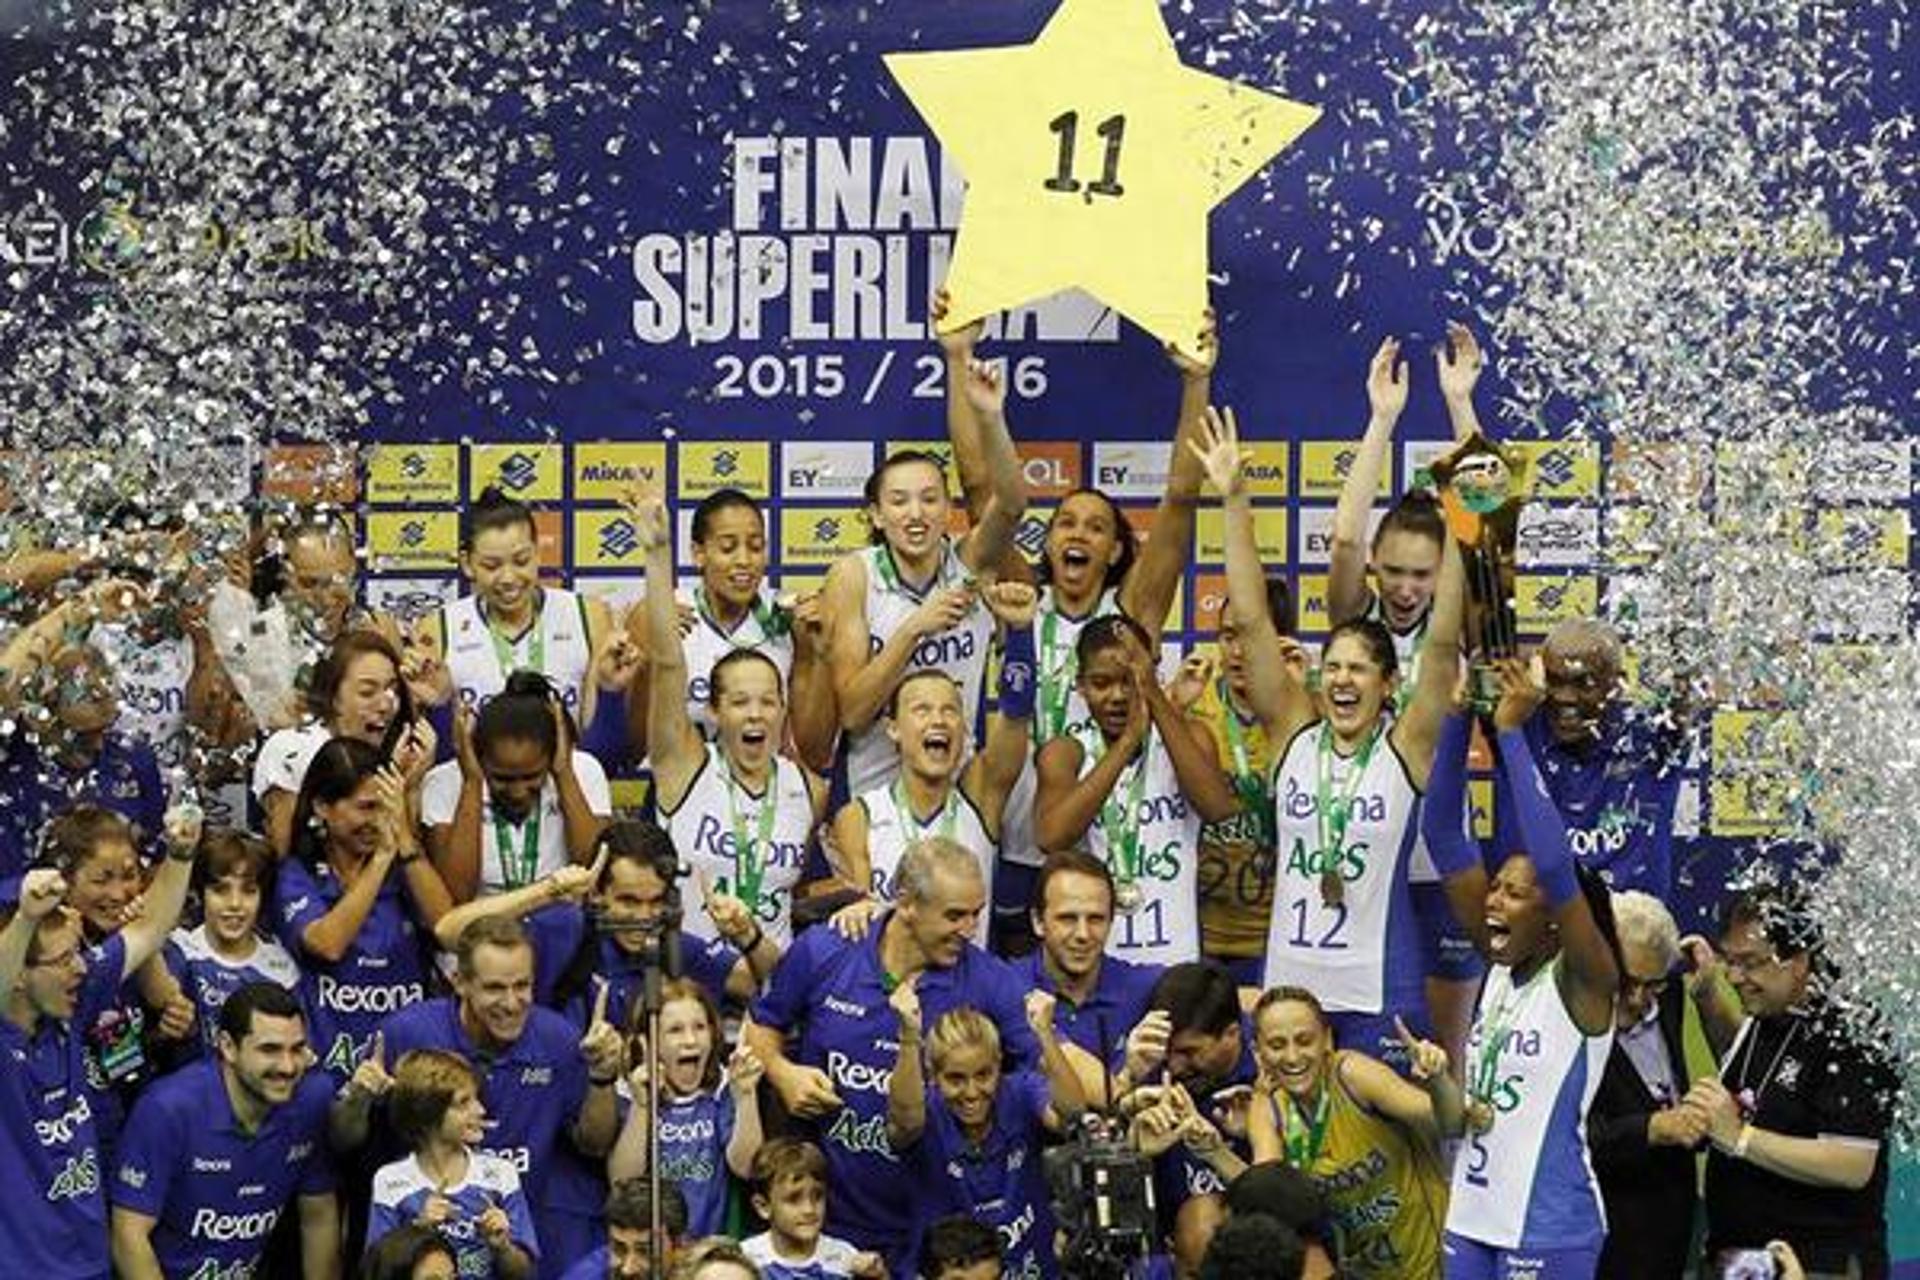 Rexona conquistou o 11º título na edição 15/16 da Superliga  (Foto: Divulgação/CBV)